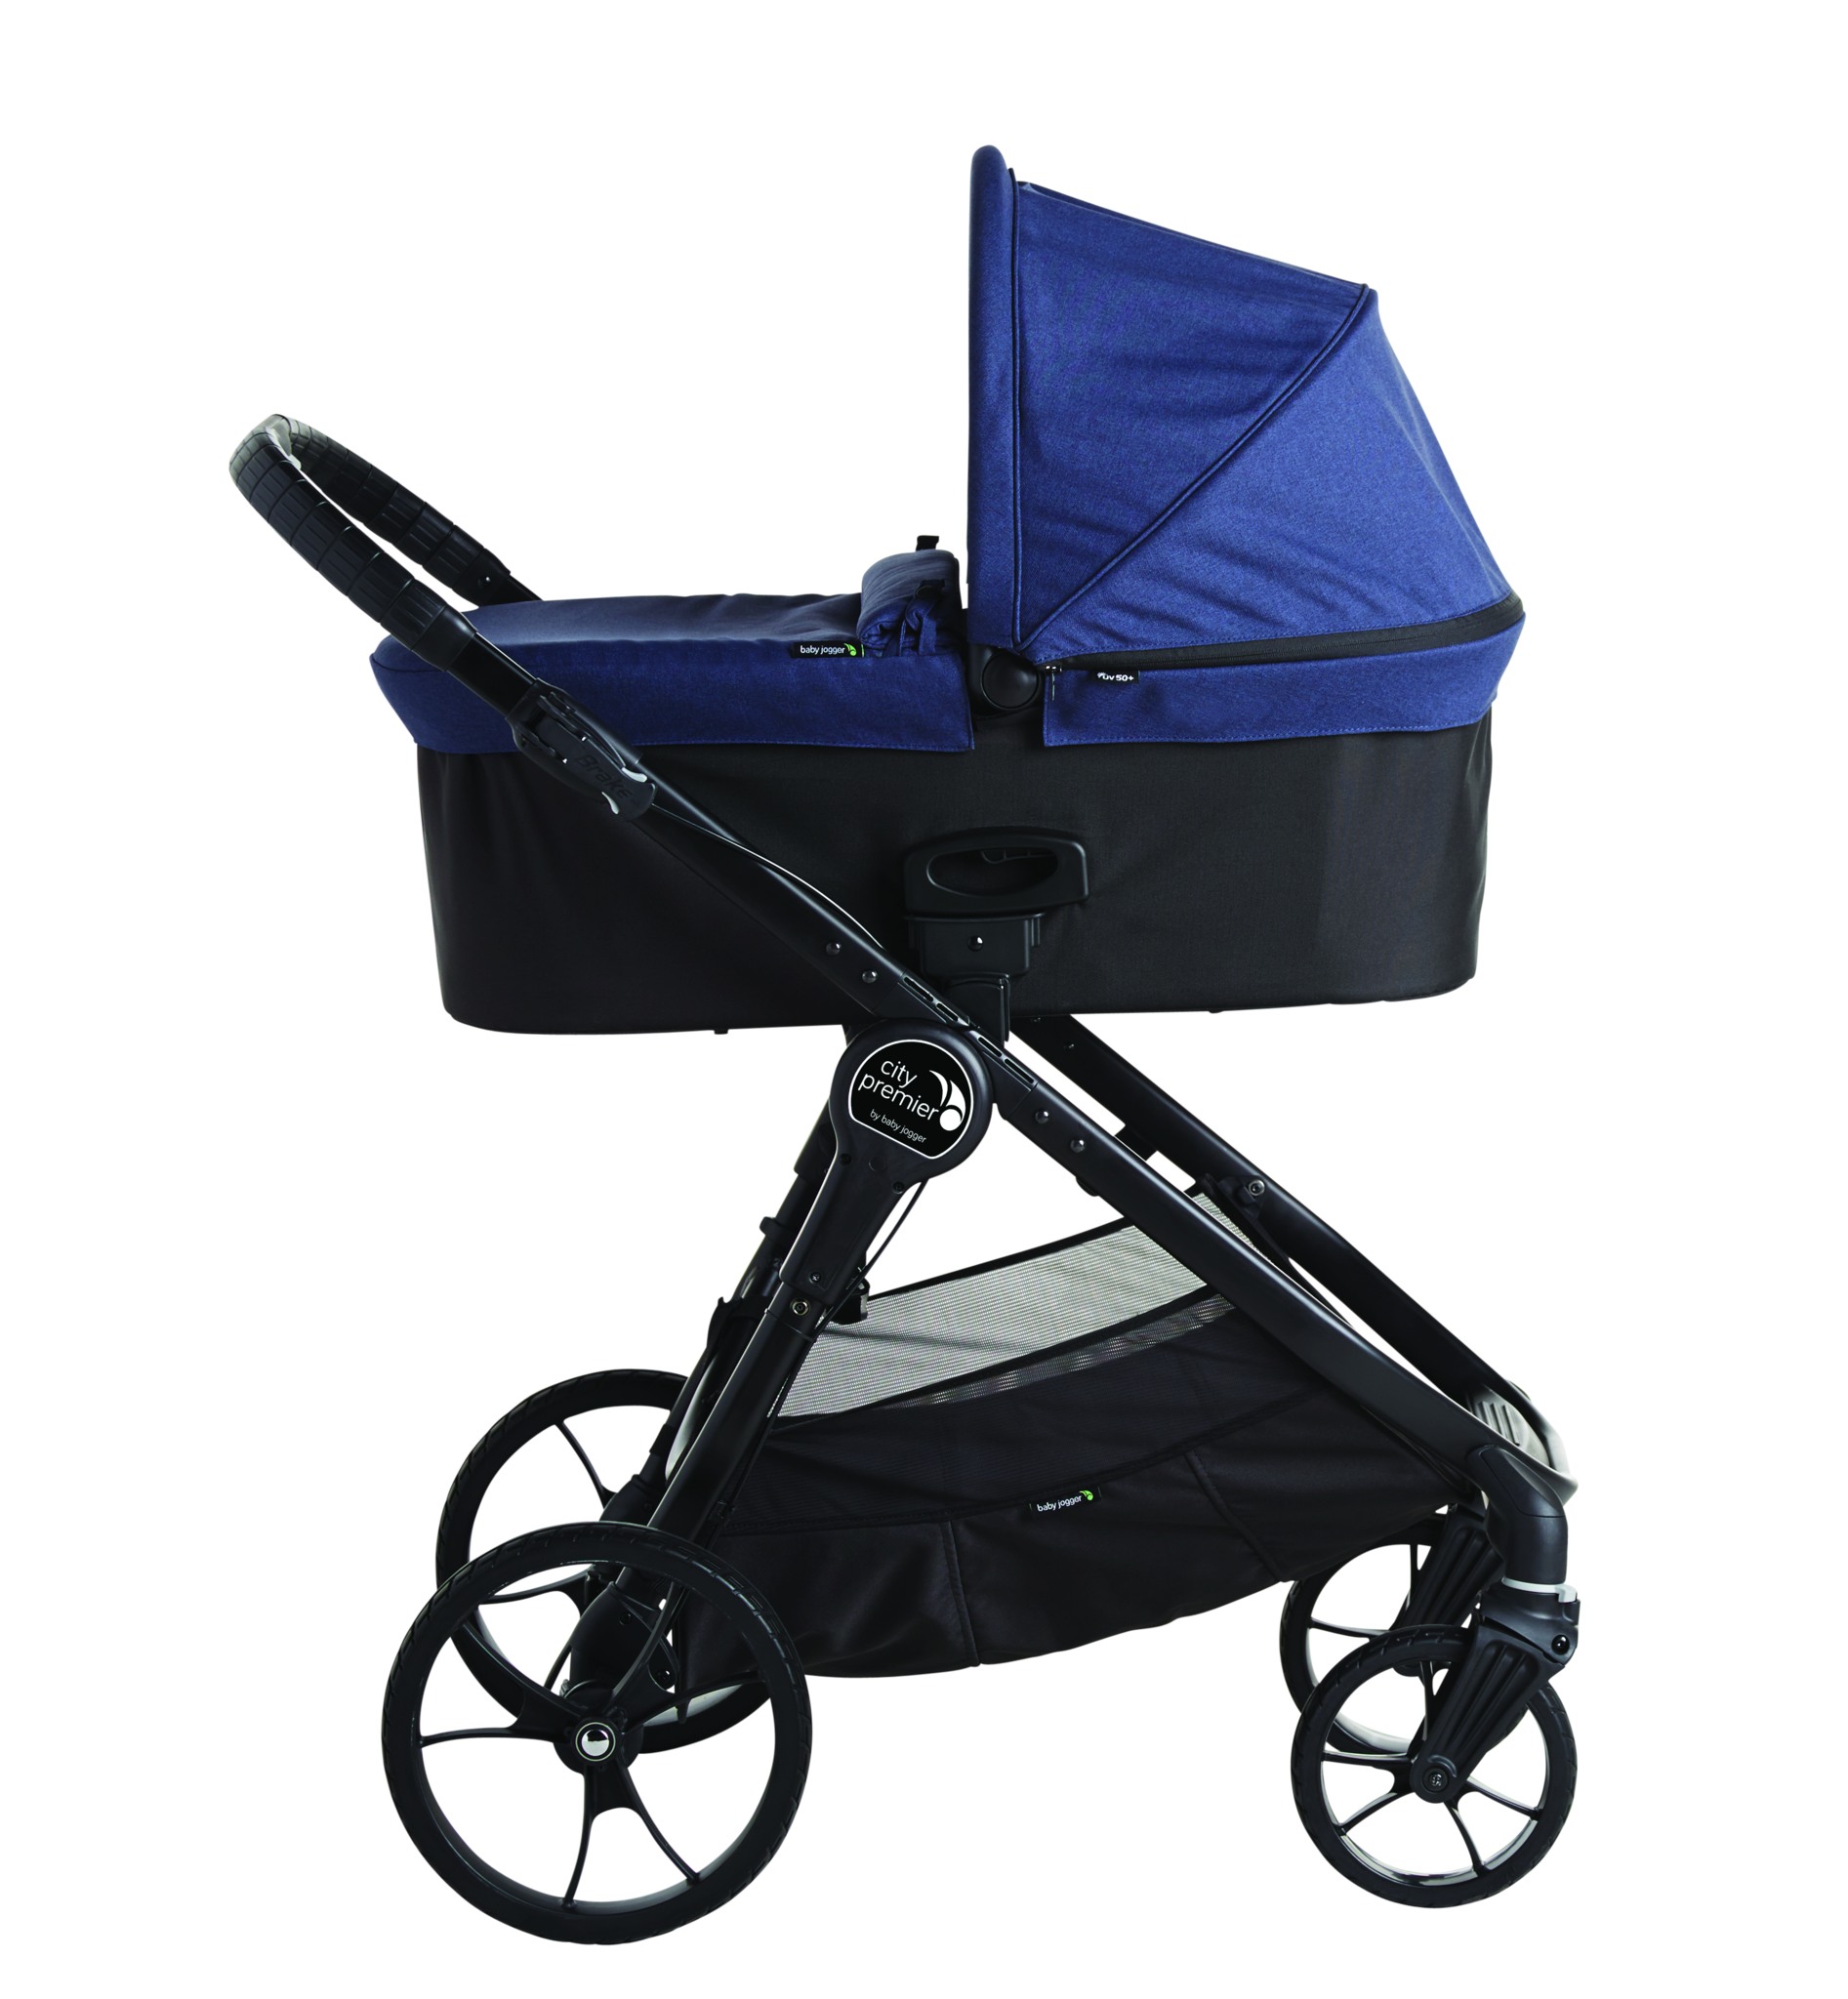 Pram Baby Stroller PNG Background Image